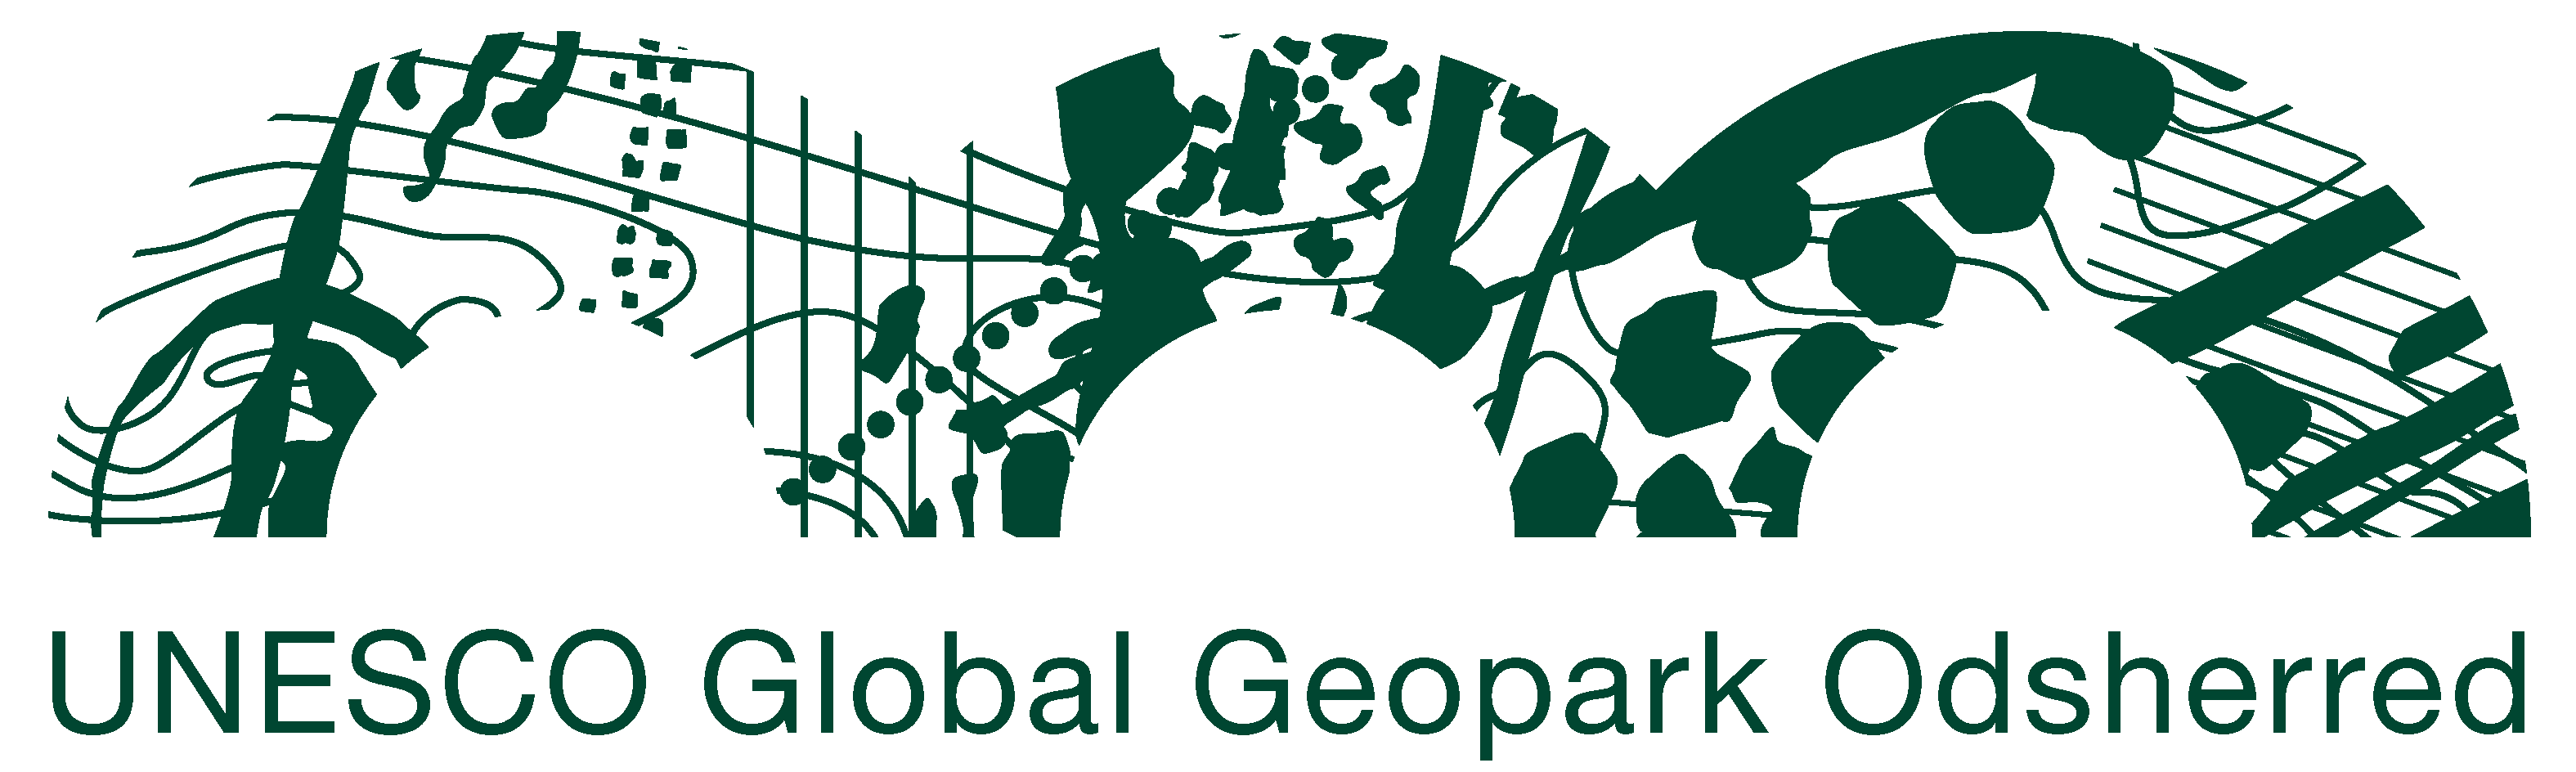 Geopark Odsherred - 